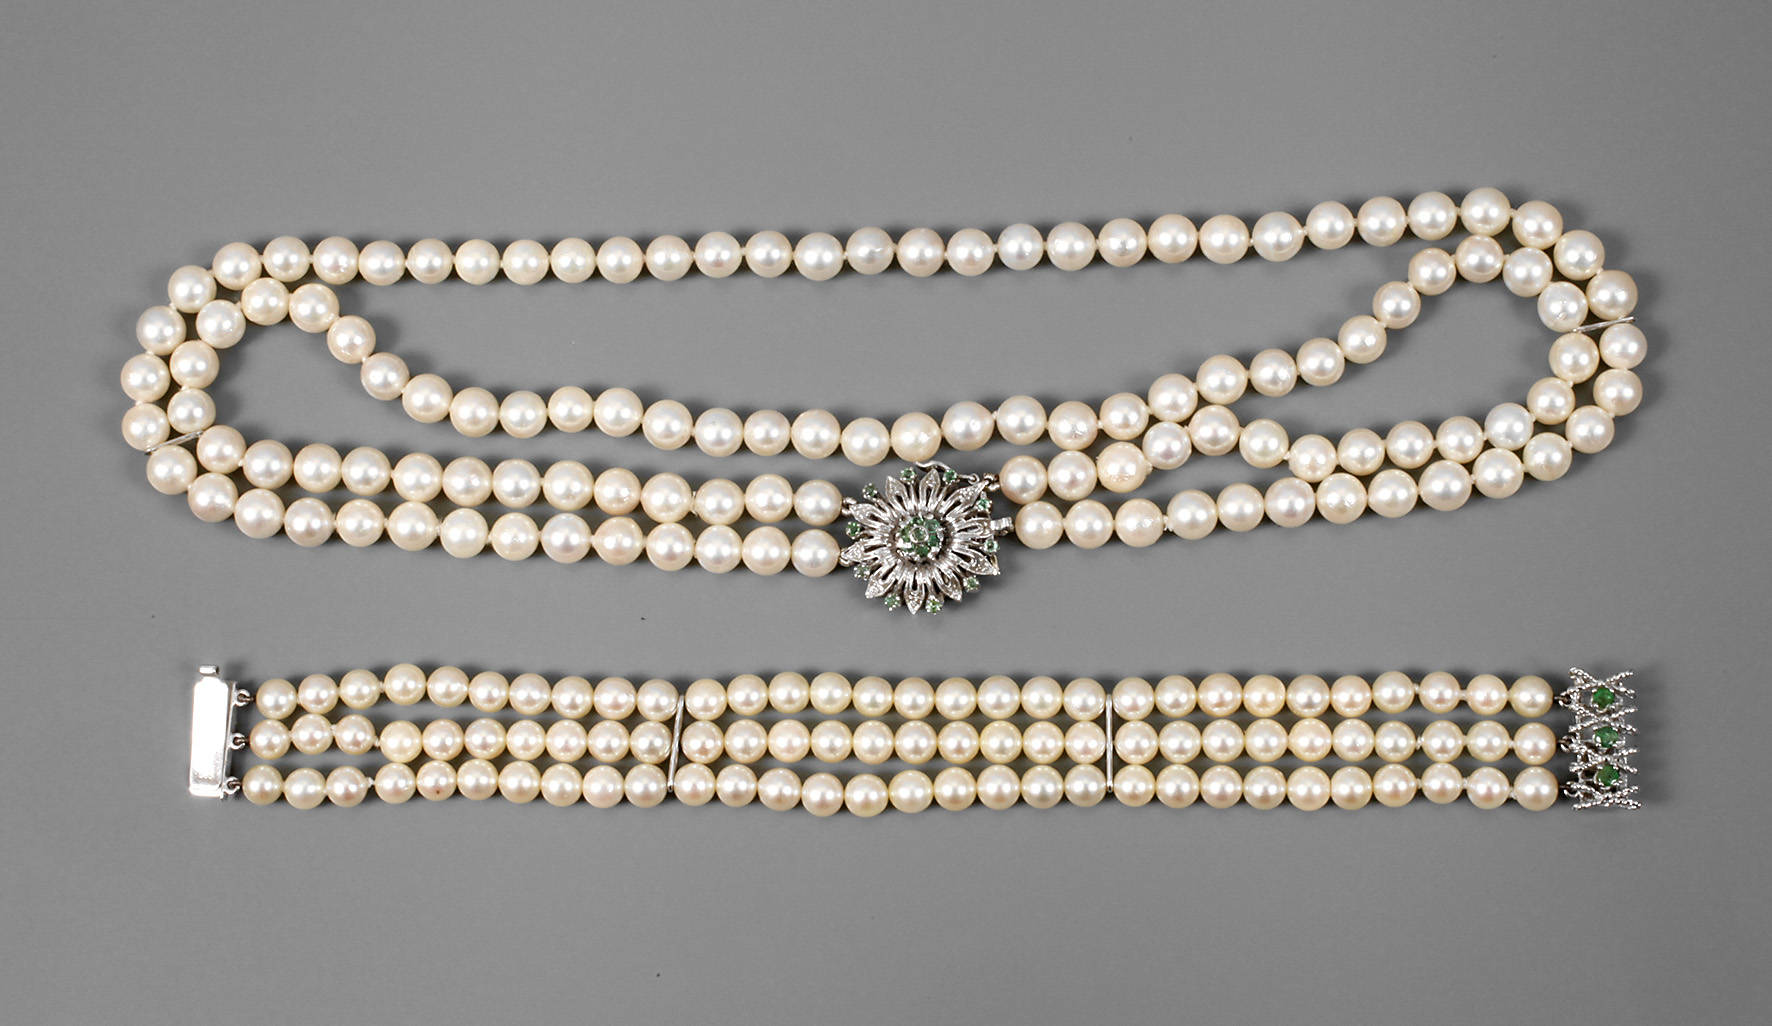 Collier und Armband mit Perlen und Smaragden